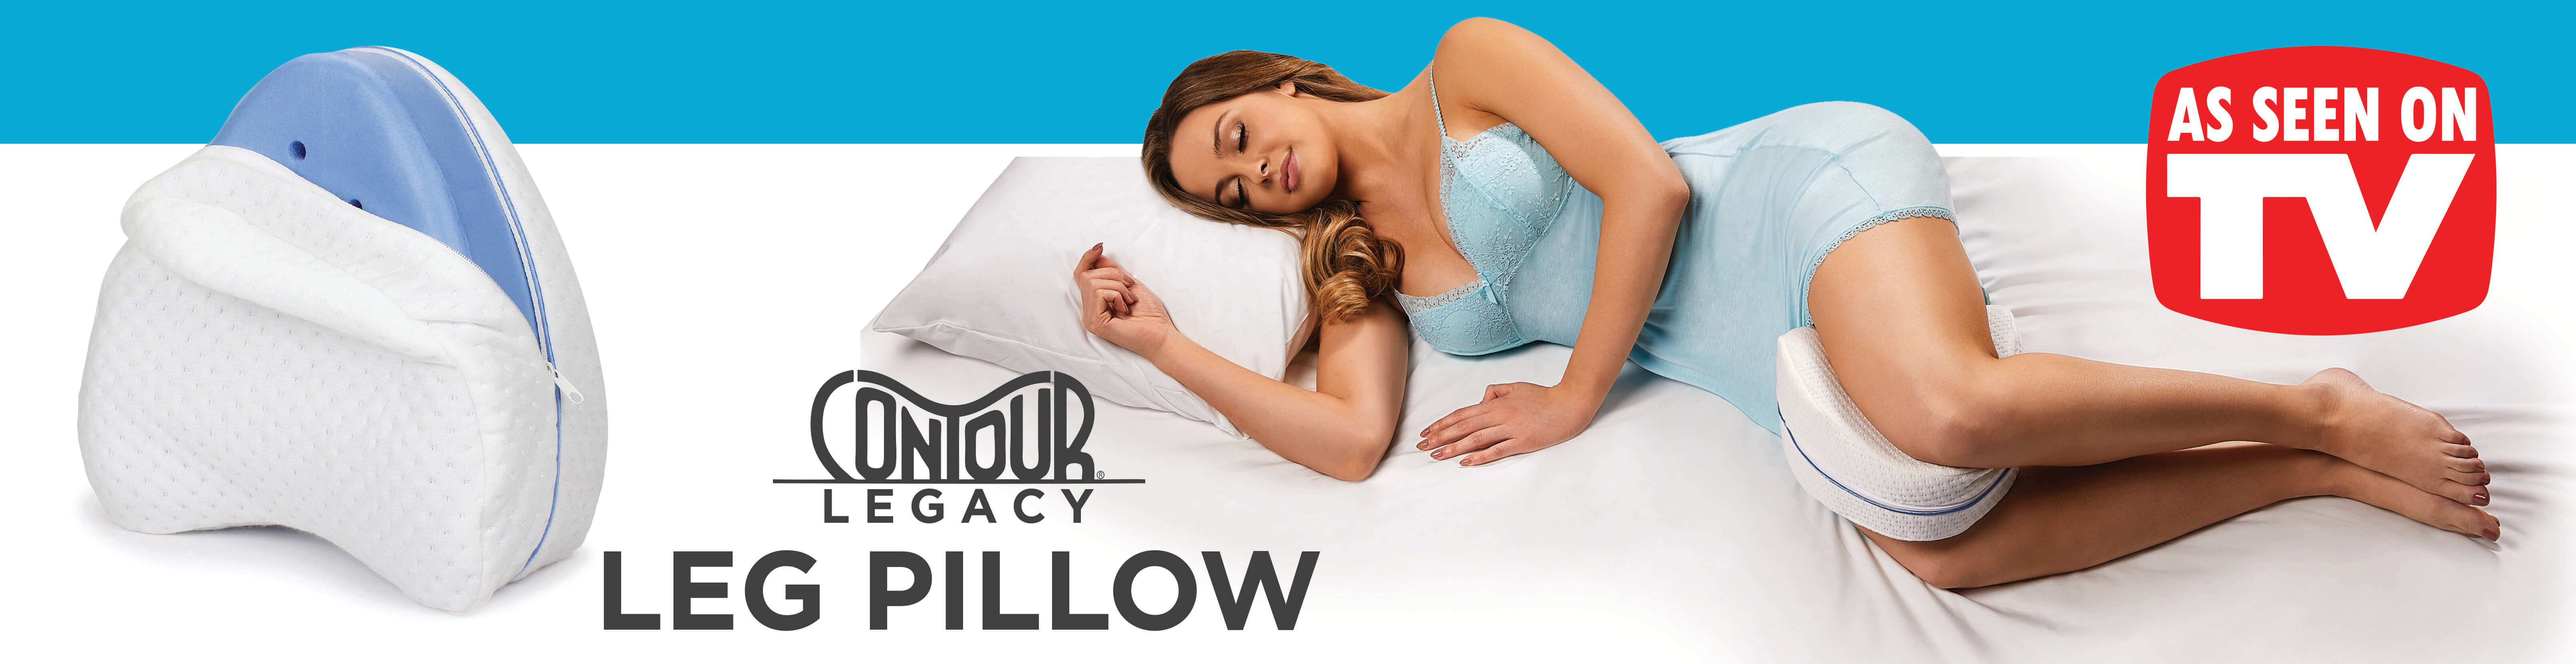 contour legacy pillow reviews